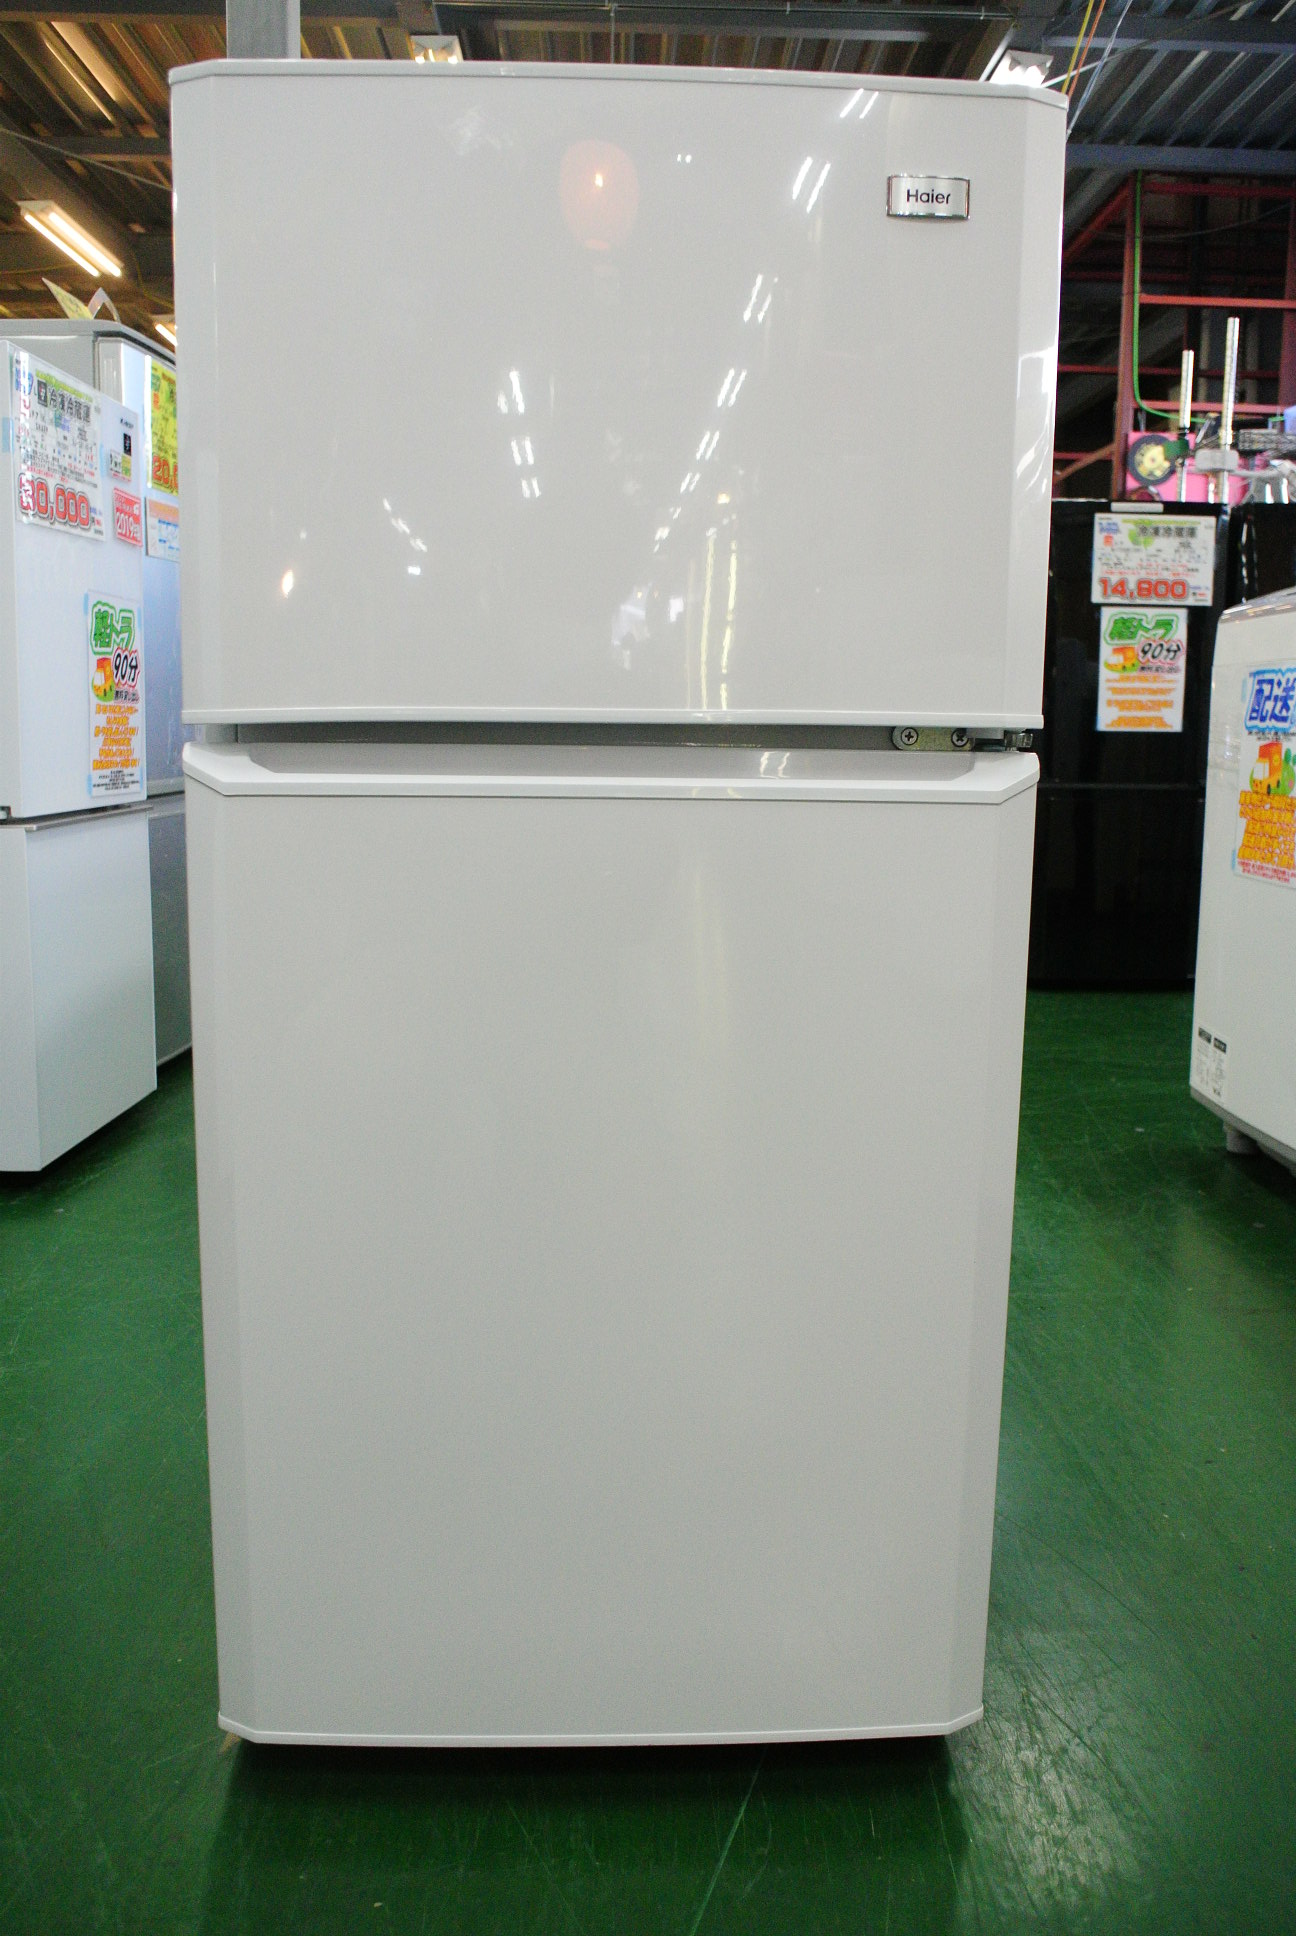 Haier(ハイアール)106L 2ドア冷蔵庫 JR-N106K 2015年製。安い中古冷蔵庫は愛品倶楽部 柏店へ。 | リサイクルショップ  中古品の買取は愛品倶楽部・愛品館